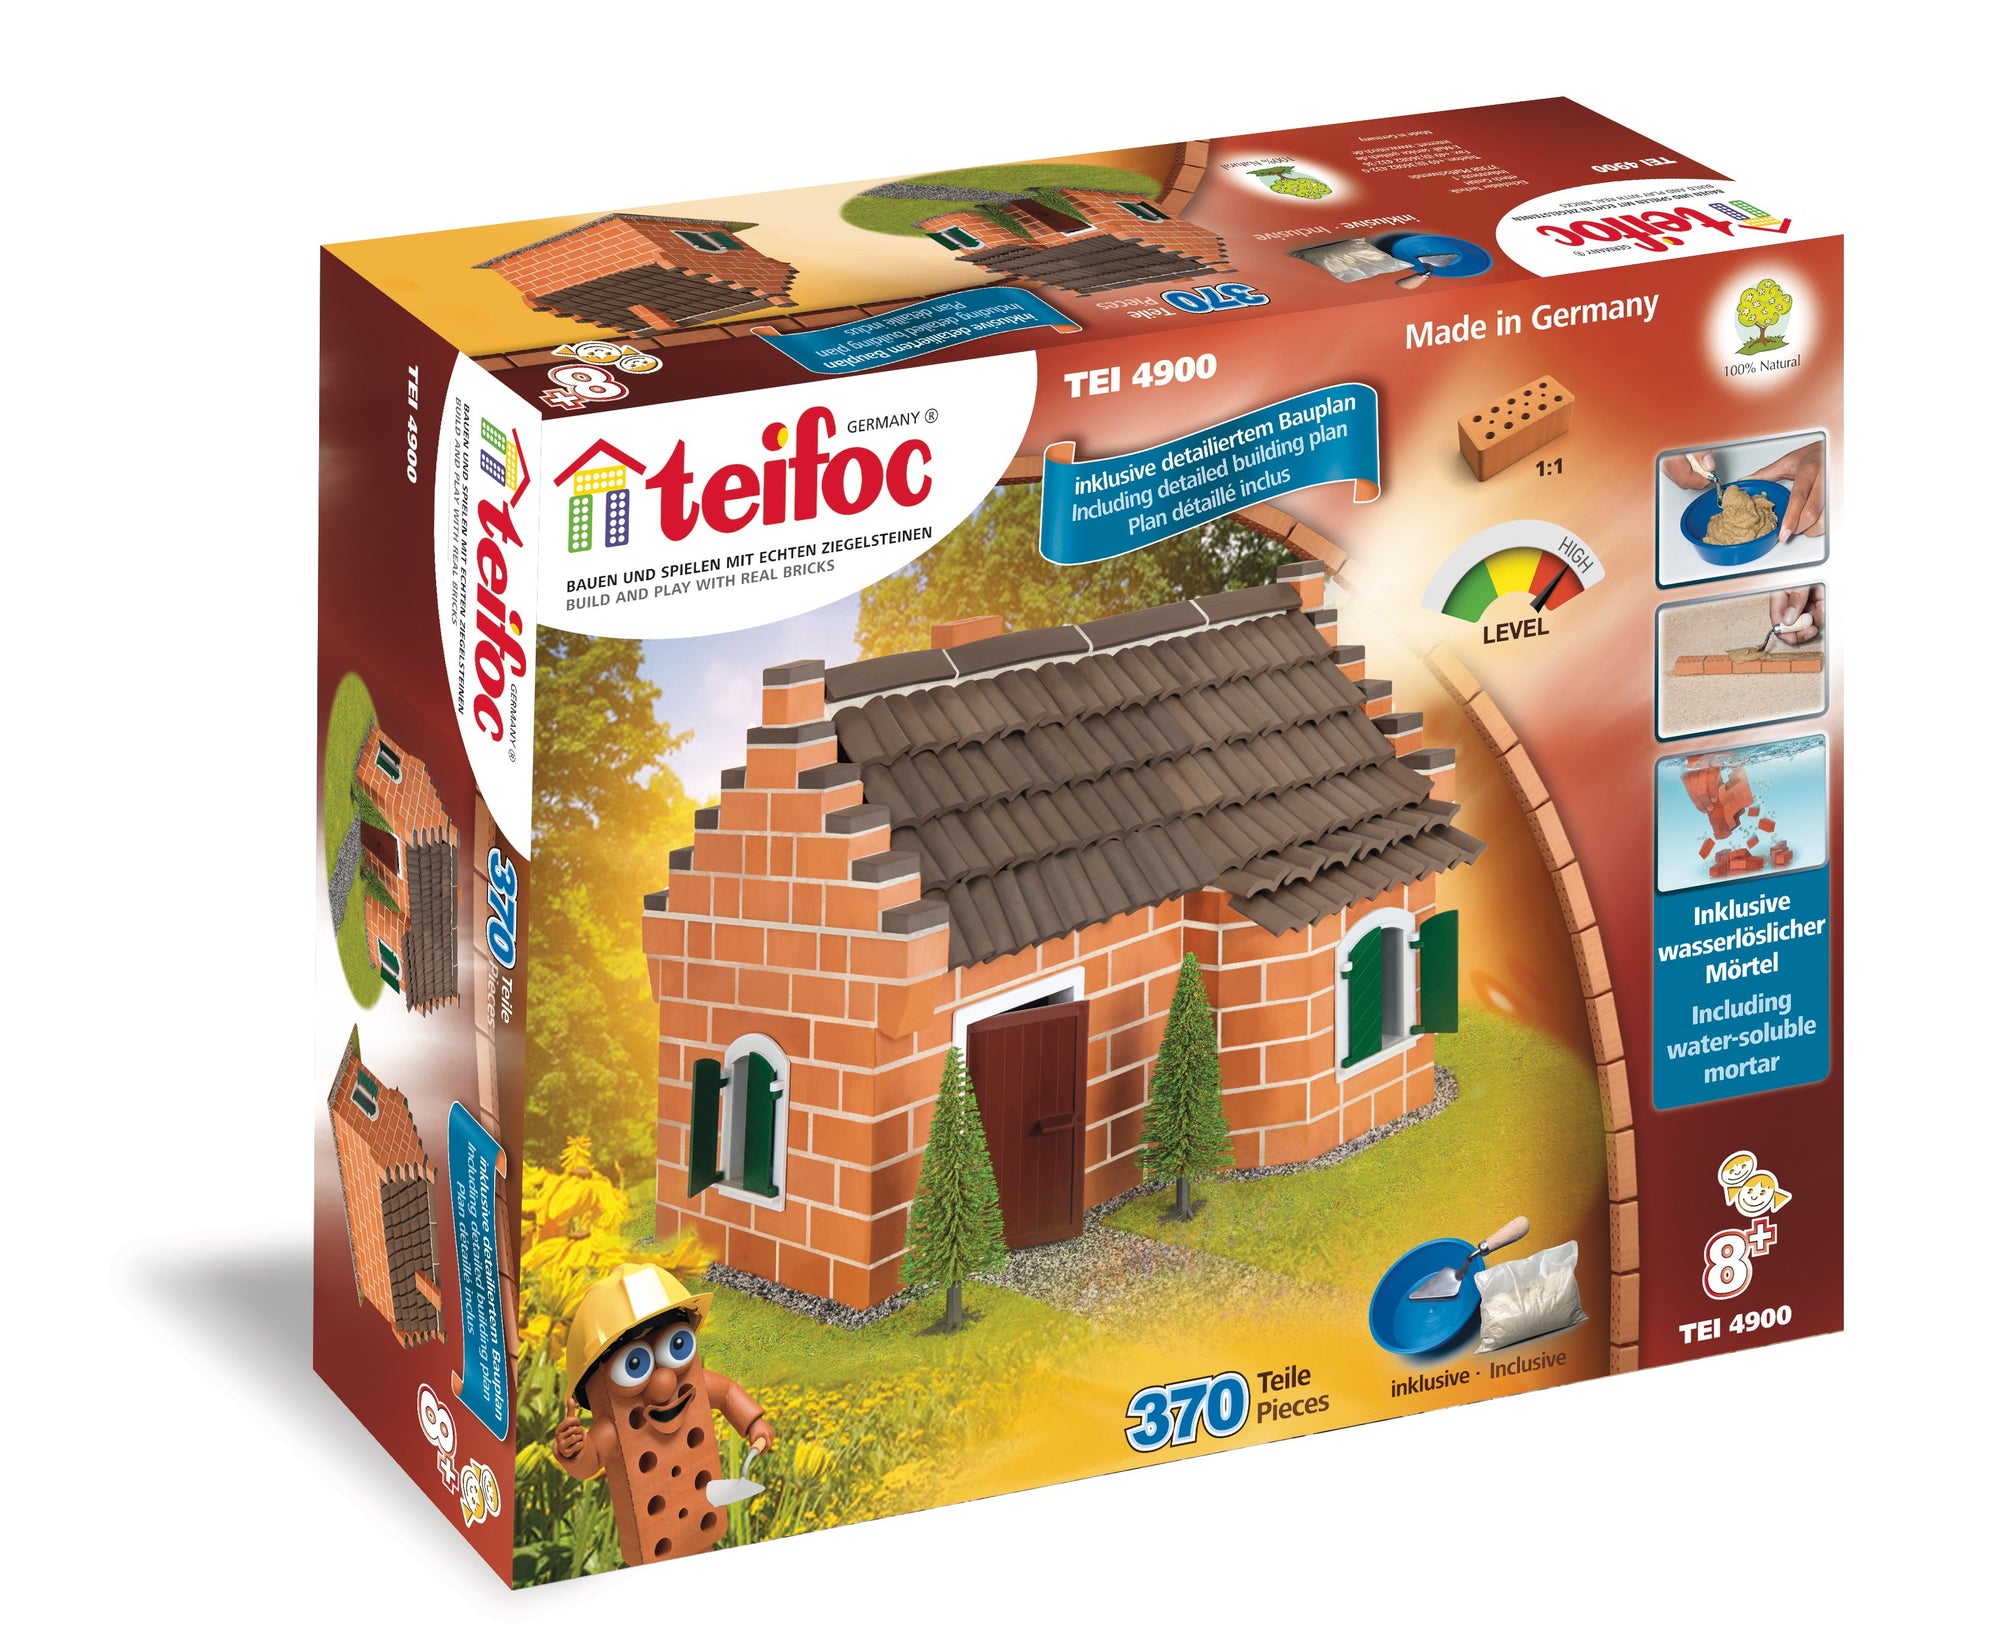 Teifoc Basic Starter Construction Set and Educational Toy